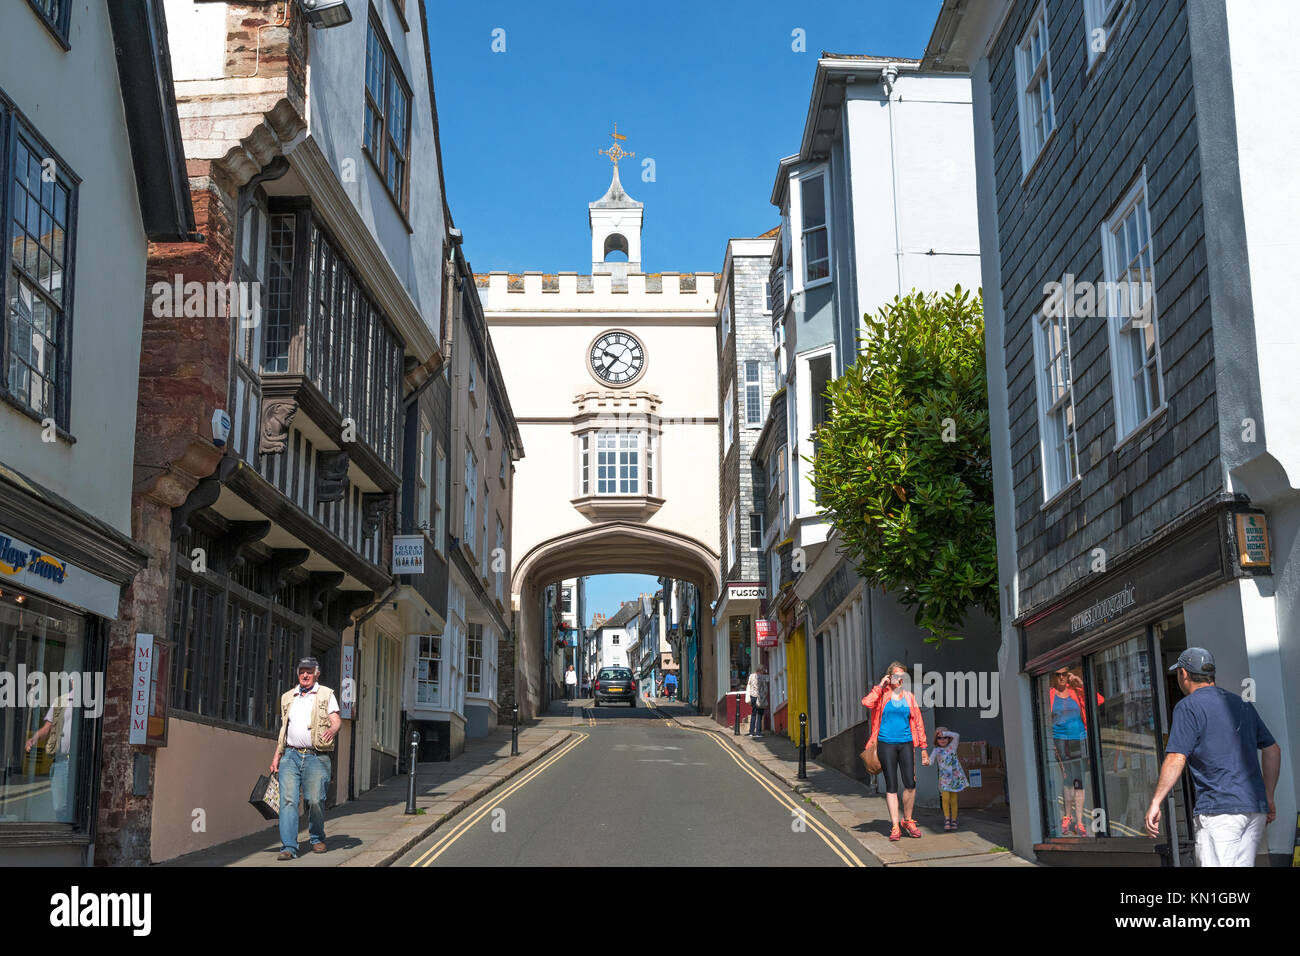 Eastgate historique arch dans high street, TOTNES, South Hams, Devon, Angleterre, Grande-Bretagne, Royaume-Uni. Banque D'Images